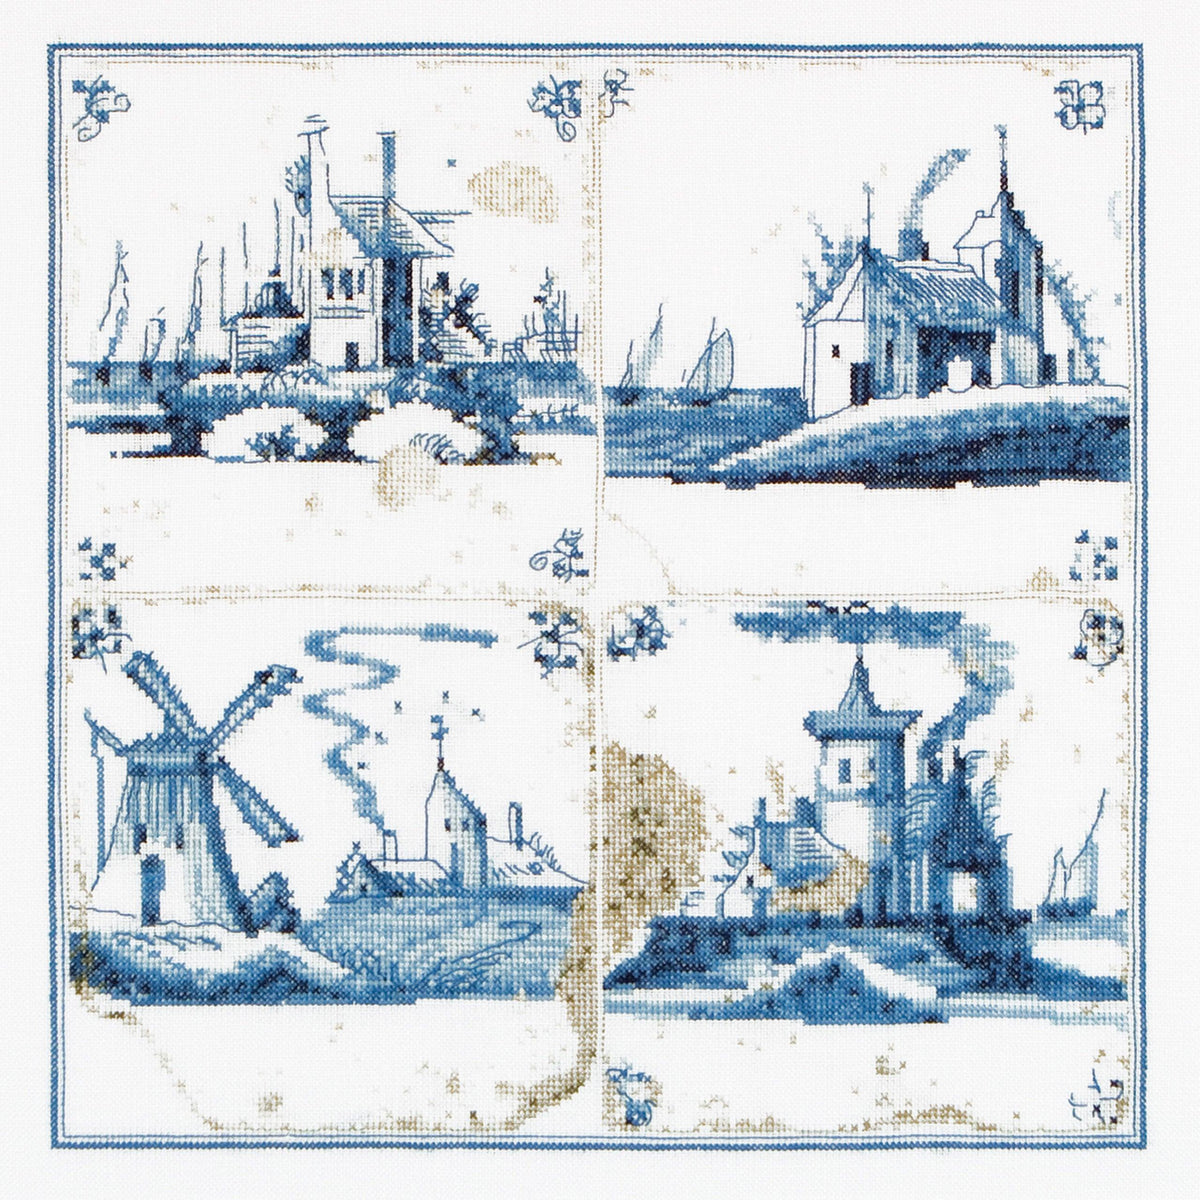 Thea Gouverneur - Counted Cross Stitch Kit - Antique Tiles Villages - Linen - 36 count - 484 - Thea Gouverneur Since 1959